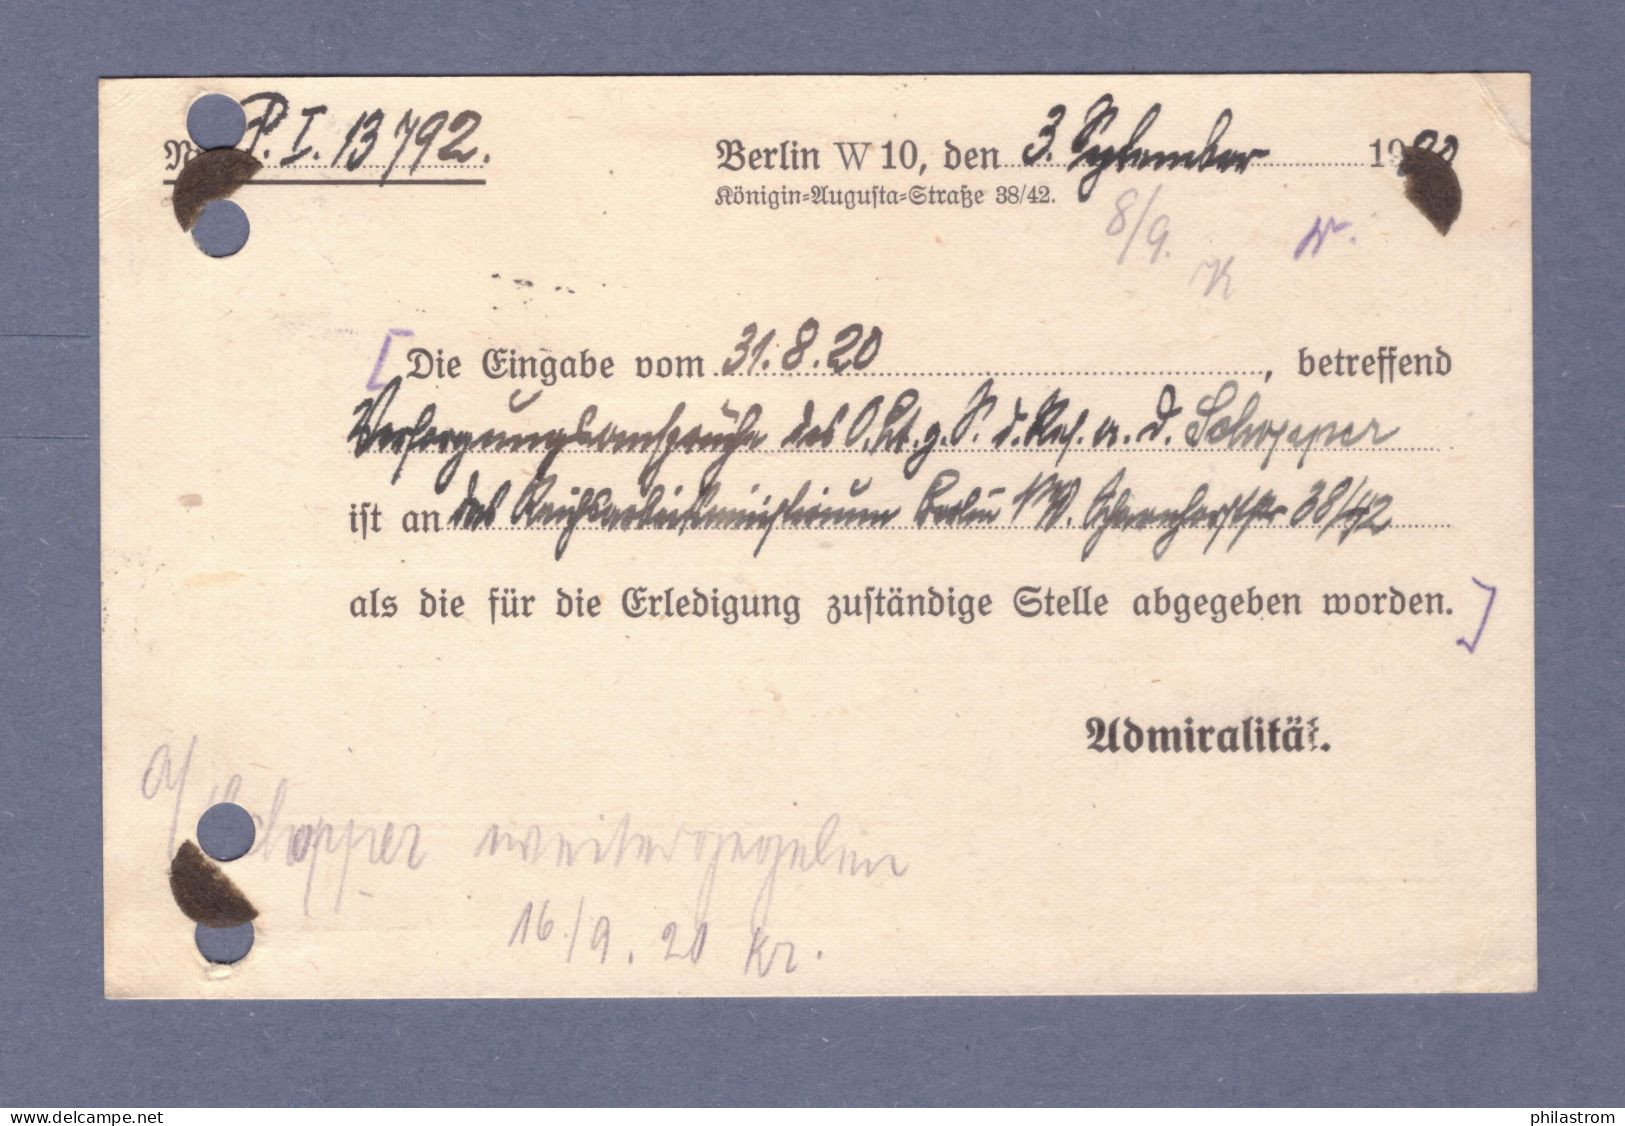 Weimar DIENST Postkarte- MARINESACHE - Reichs-Marine Admiralität - Mi 20 - Berlin SW 7.9.20 --> Hamburg (CG13110-234) - Officials